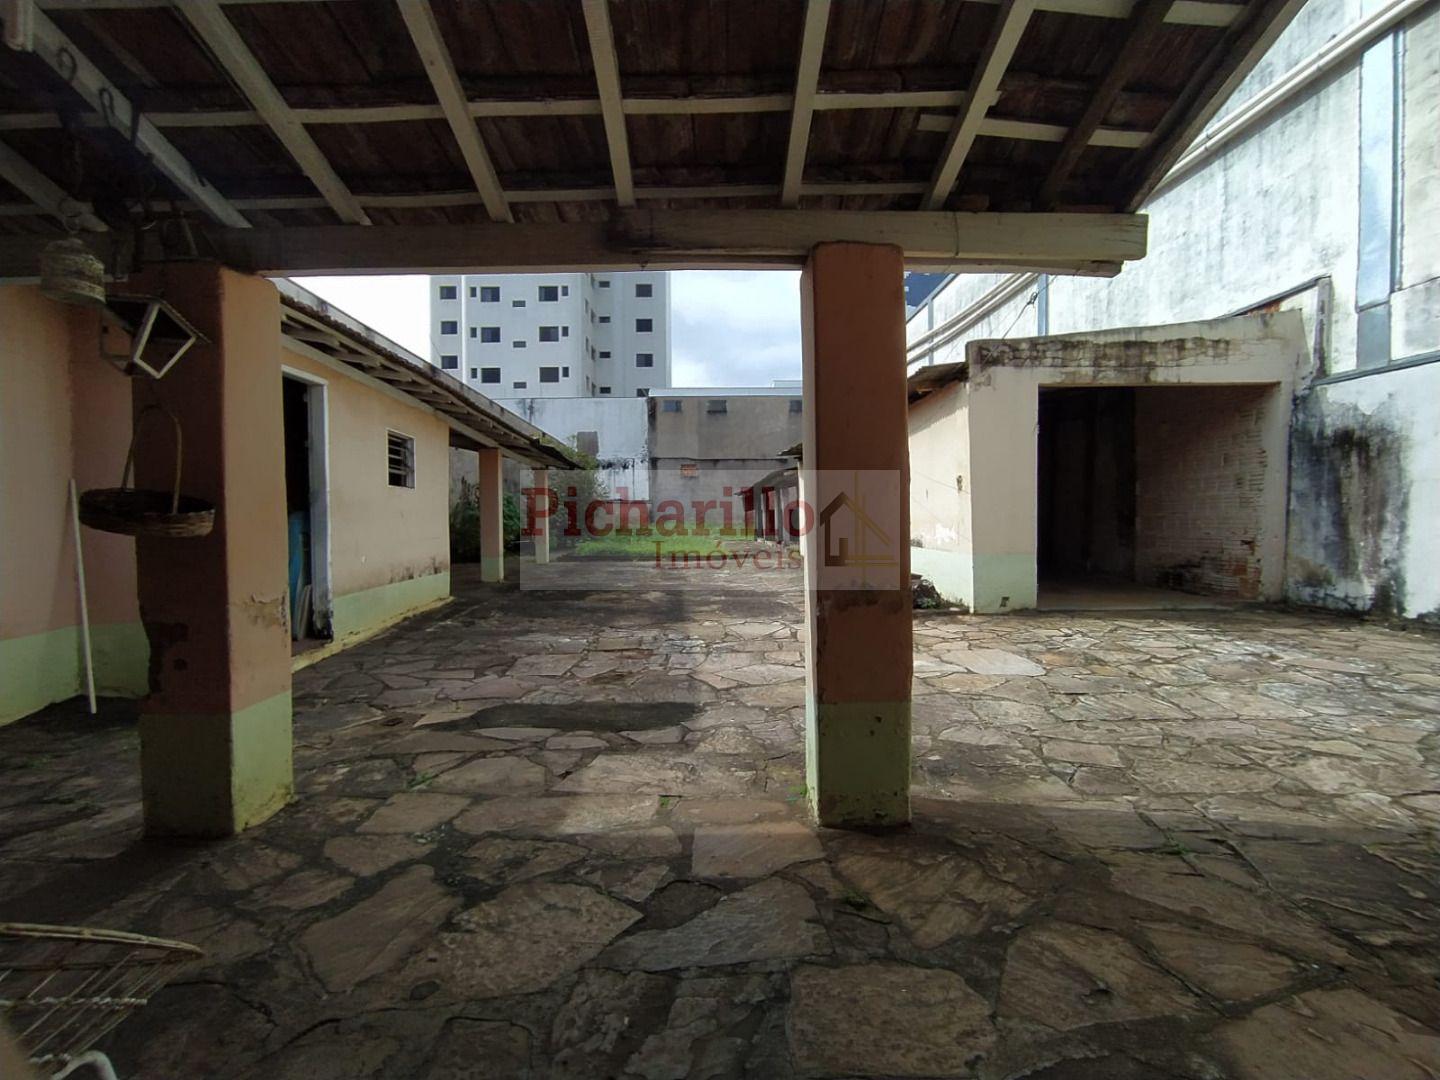 Terreno Av. São Carlos com 484 m², no Centro em excelente ponto comercial - São Carlos/SP